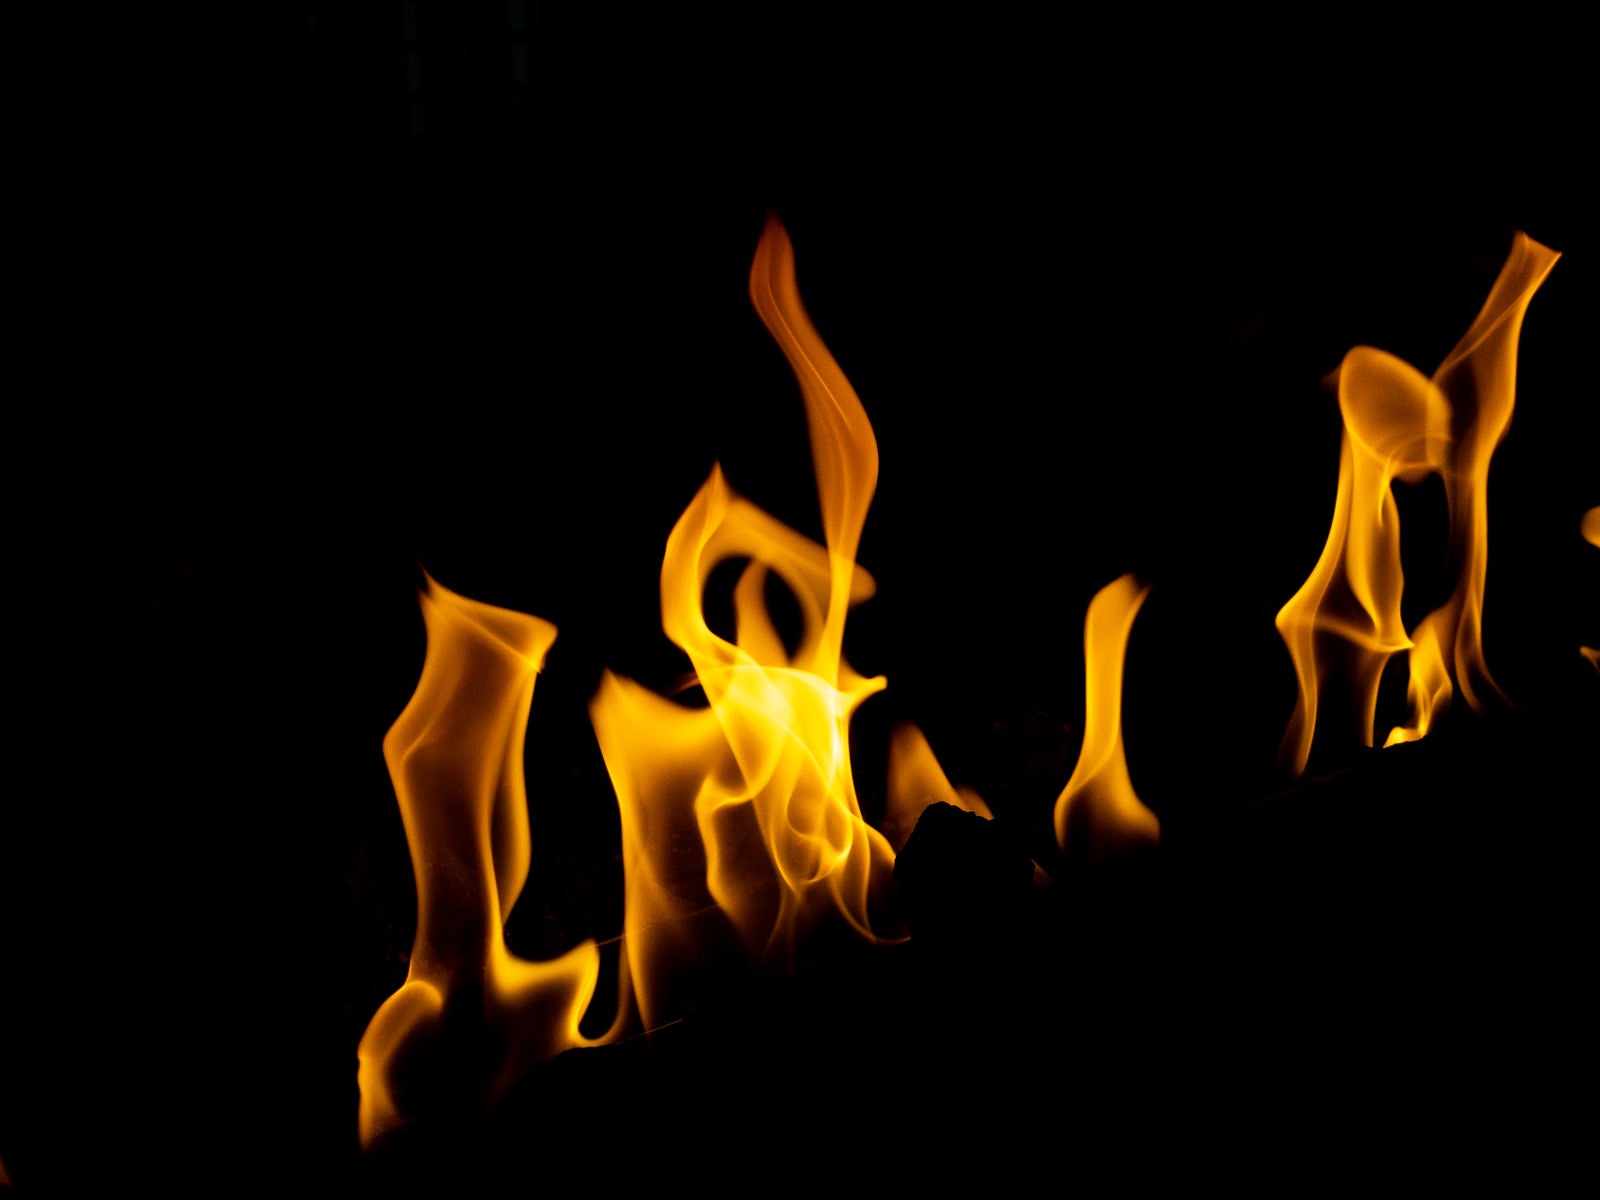 「燃えさかる炎の中」の写真